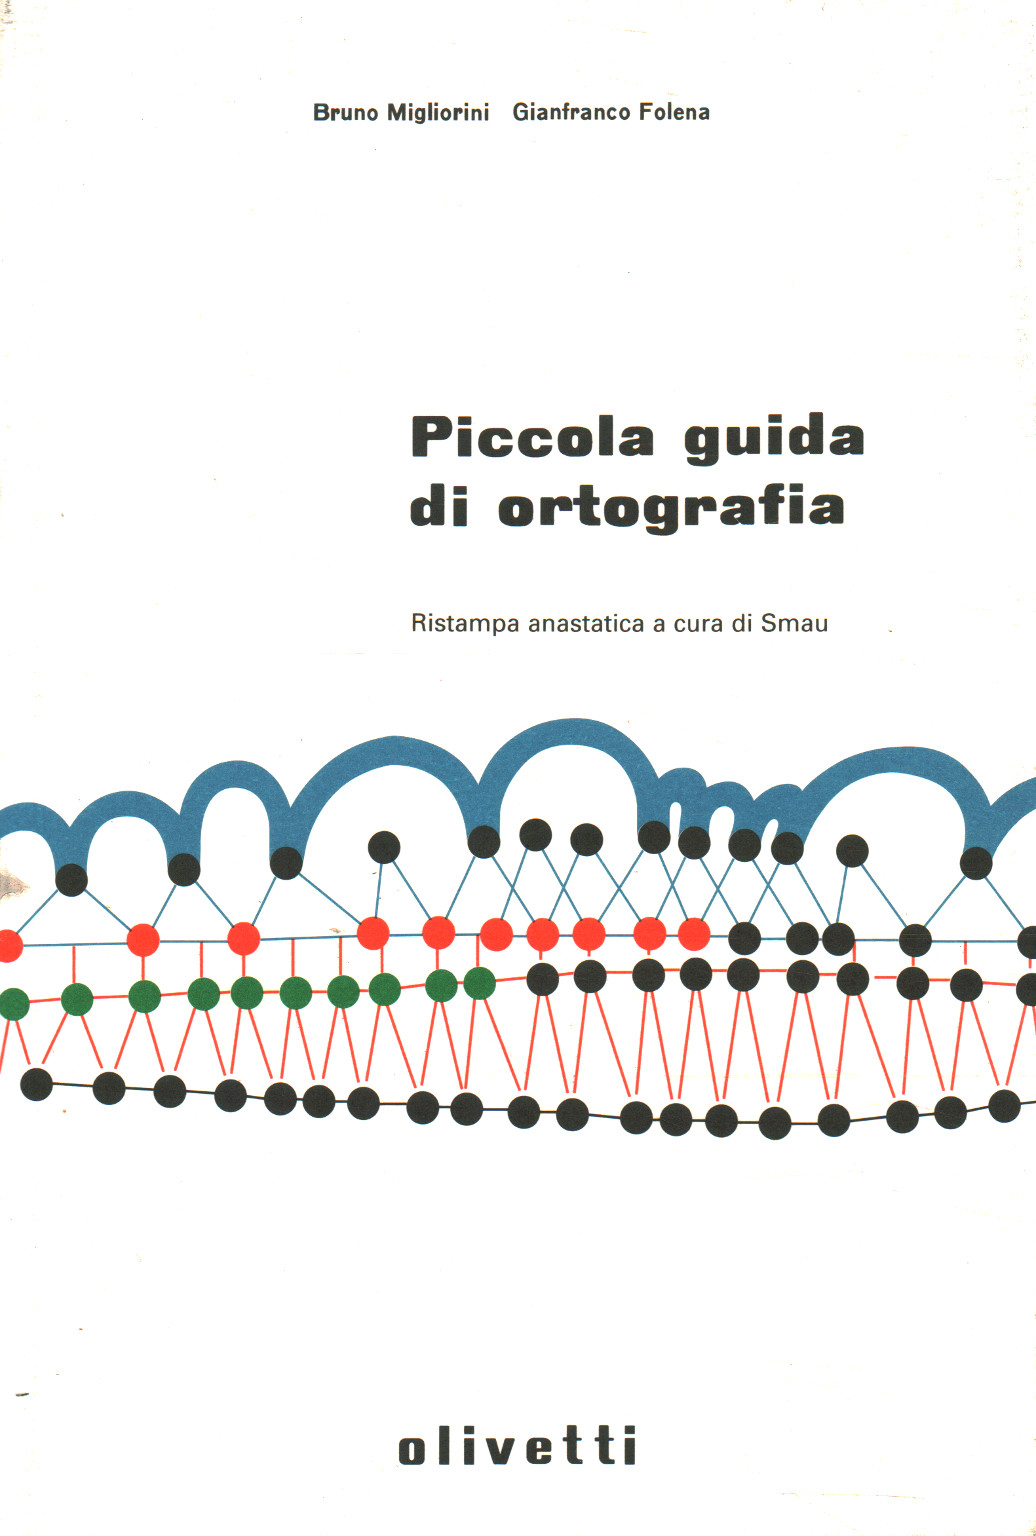 Small spelling guide, Bruno Migliorini Gianfranco Folena